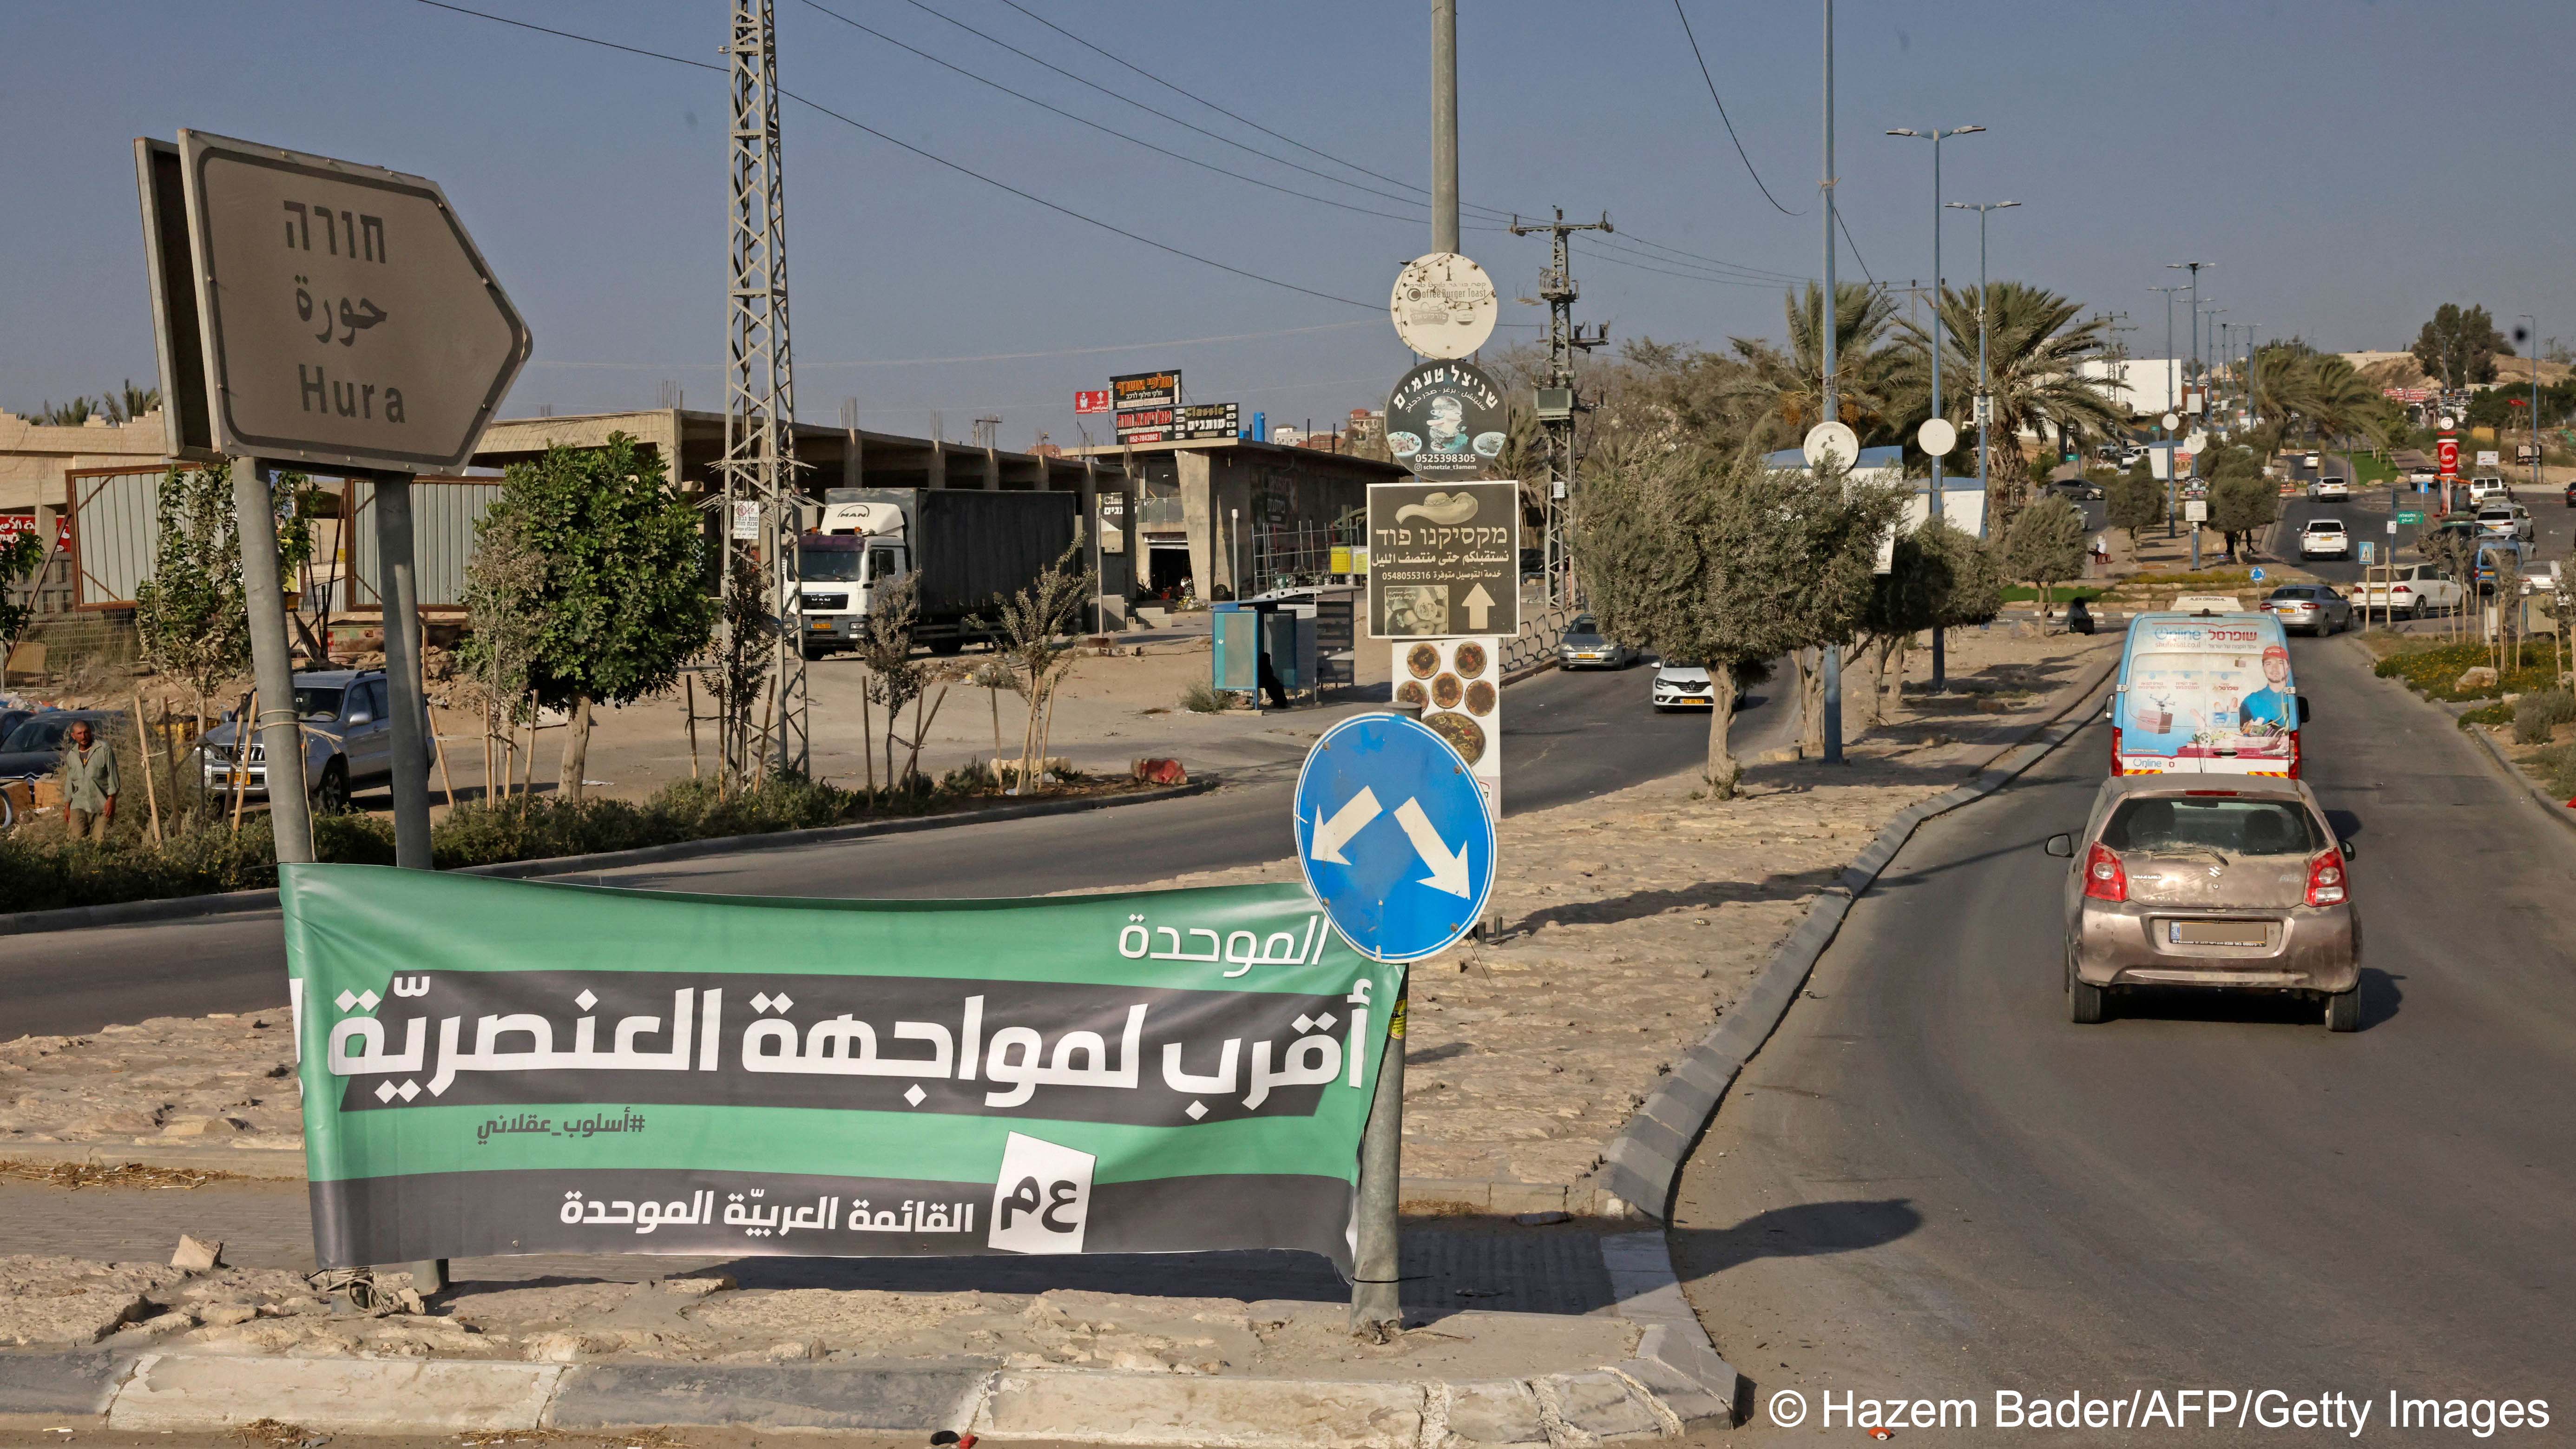 لافتة انتخابية في قرية حورة في صحراء النقب الجنوبية، 7 أكتوبر 2022 (HAZEM BADER / AFP)(photo: HAZEM BADER/AFP)